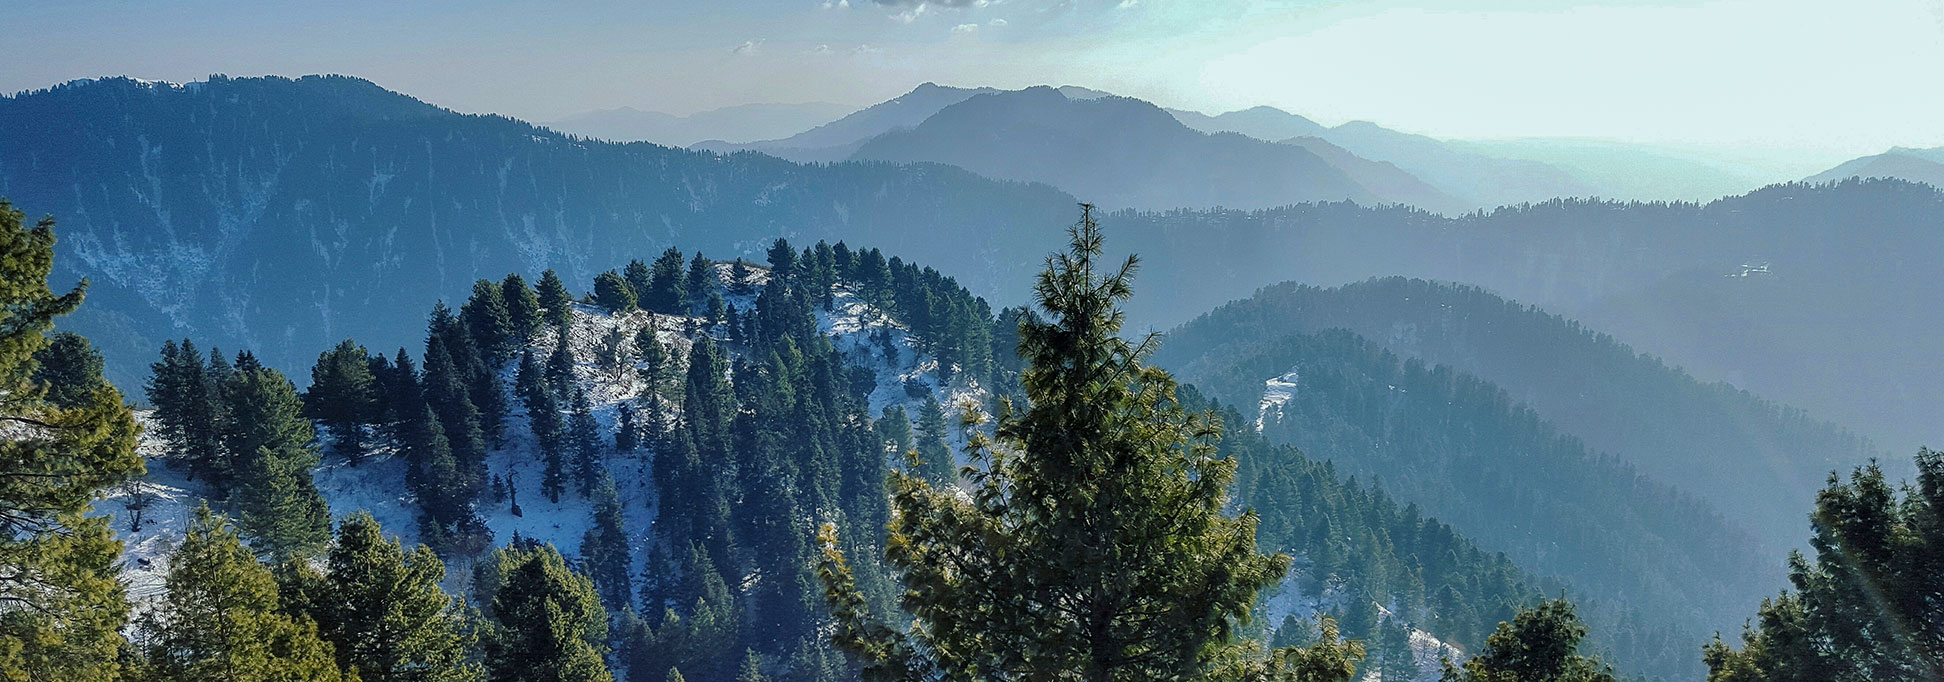 Miranjani mountain in Abbottabad District, Pakistan